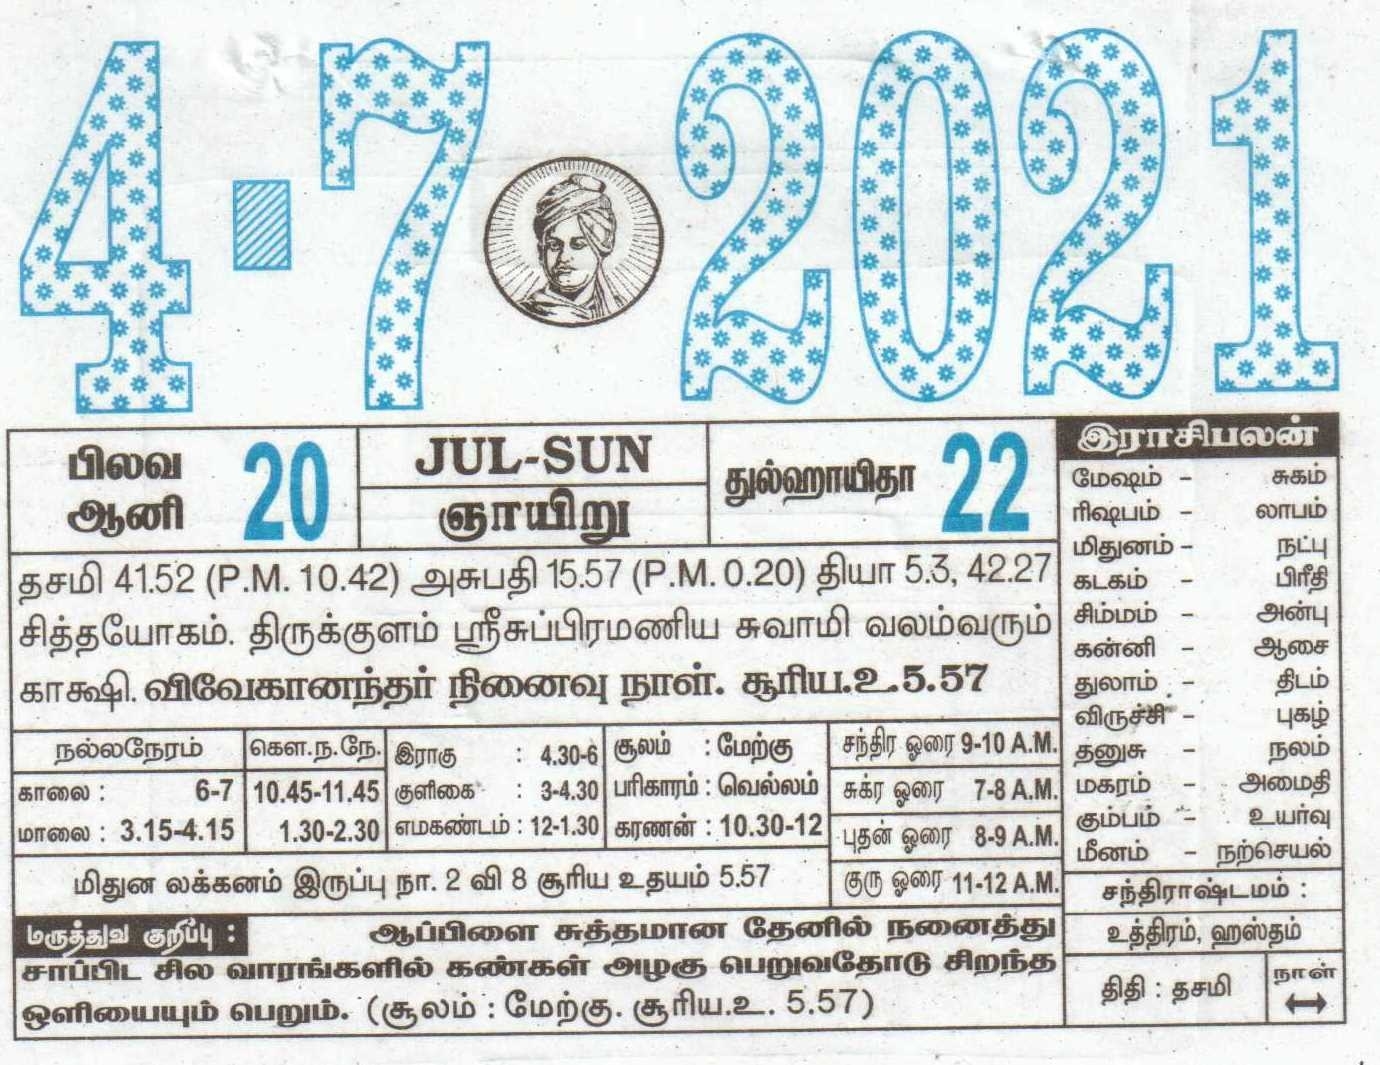 04-07-2021 Daily Calendar | Date 04 , January Daily Tear Off Calendar | Daily Panchangam Rasi Palan June 2021 Calendar In Tamil